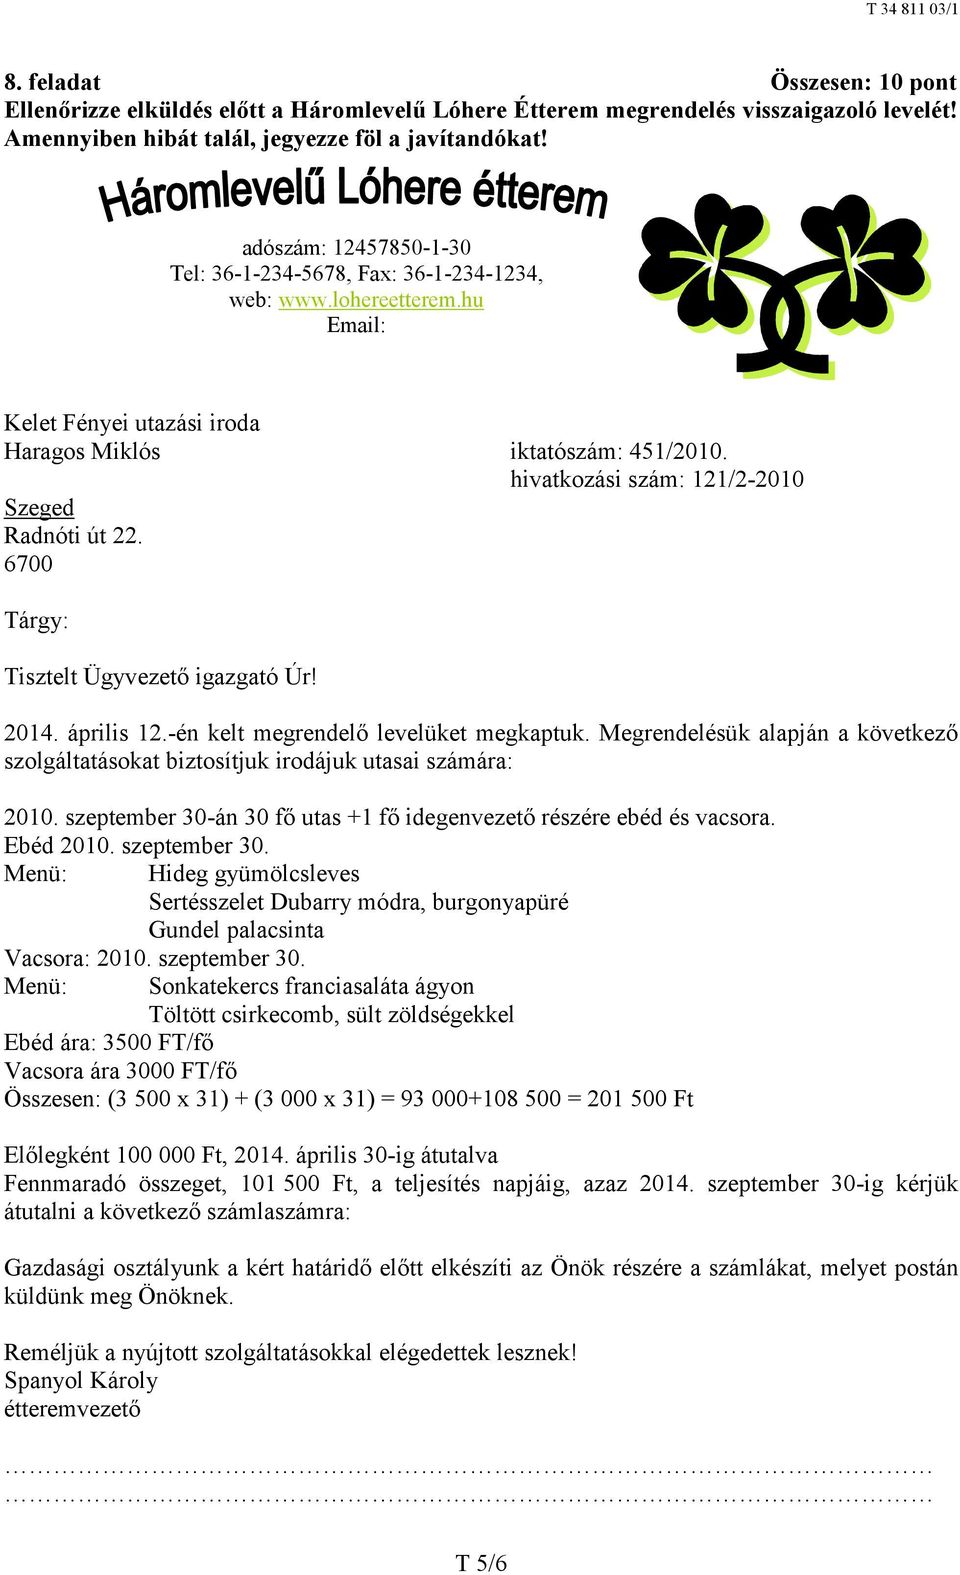 hivatkozási szám: 121/2-2010 Szeged Radnóti út 22. 6700 Tárgy: Tisztelt Ügyvezető igazgató Úr! 2014. április 12.-én kelt megrendelő levelüket megkaptuk.